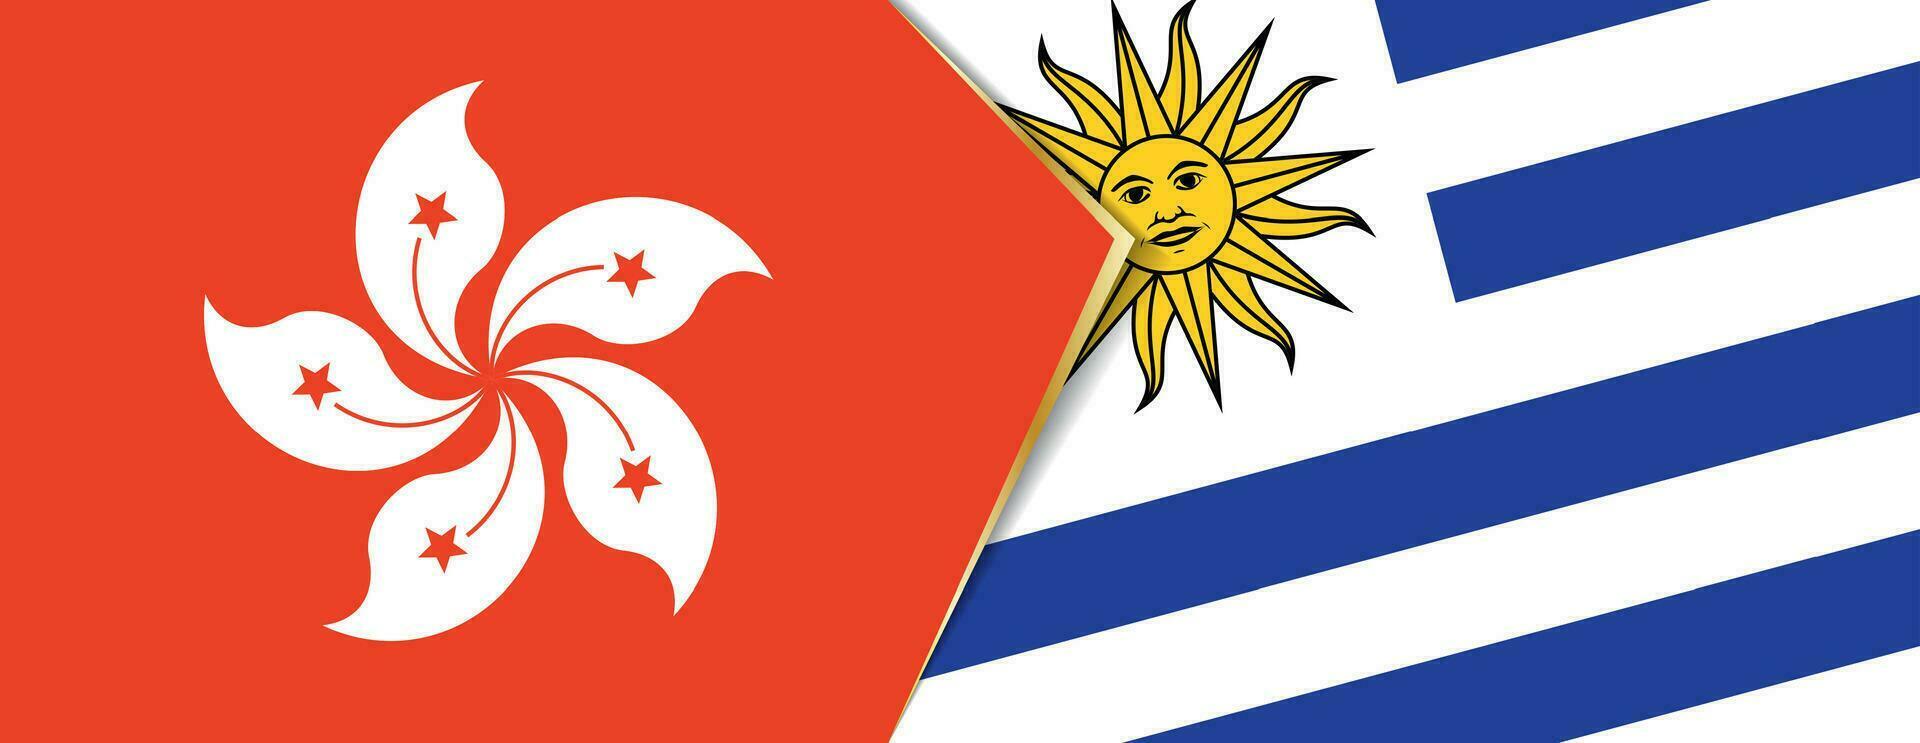 Hong kong et Uruguay drapeaux, deux vecteur drapeaux.